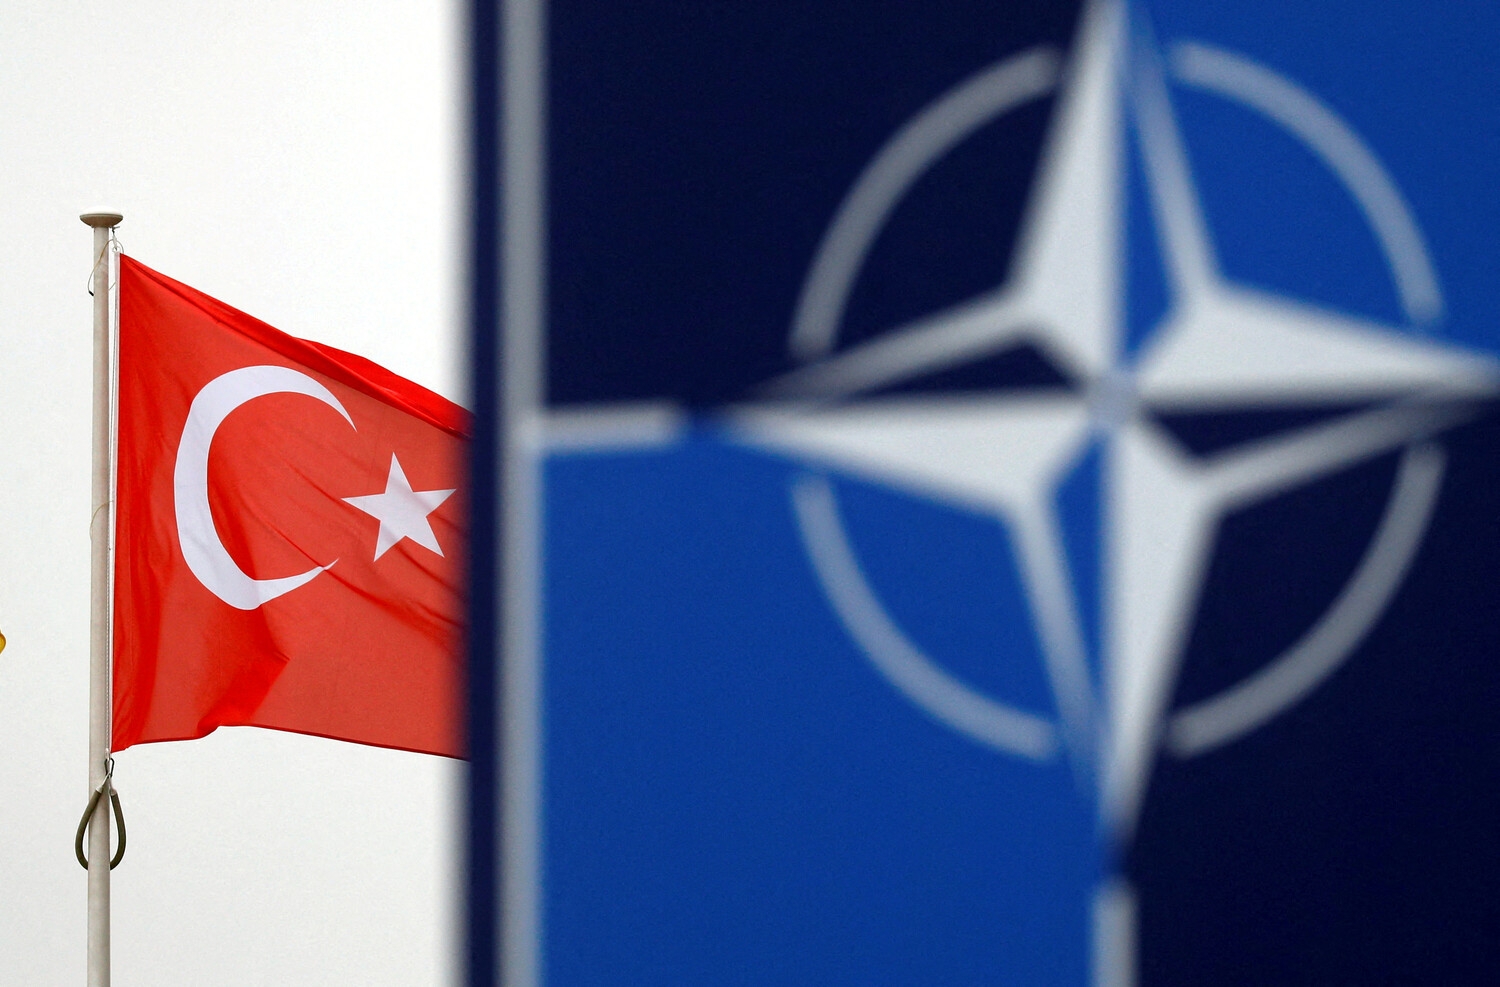 Парламент Турции единогласно одобрил вступление Финляндии в НАТО